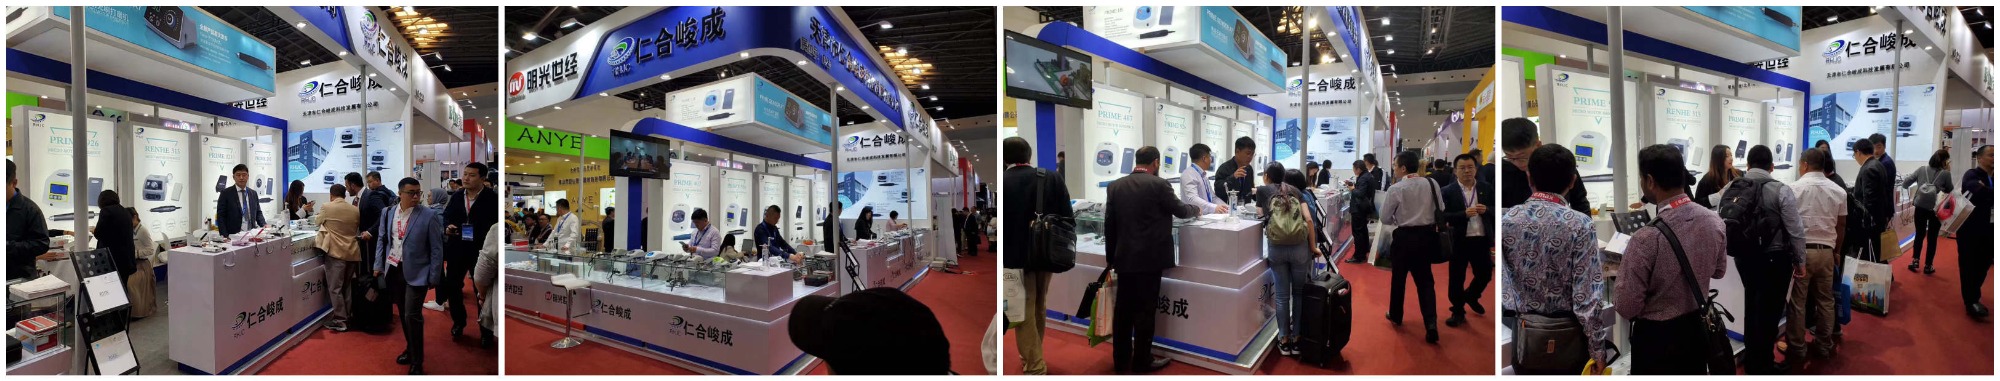 Exposición de micromotores dentales RHJC en dentech china 2019